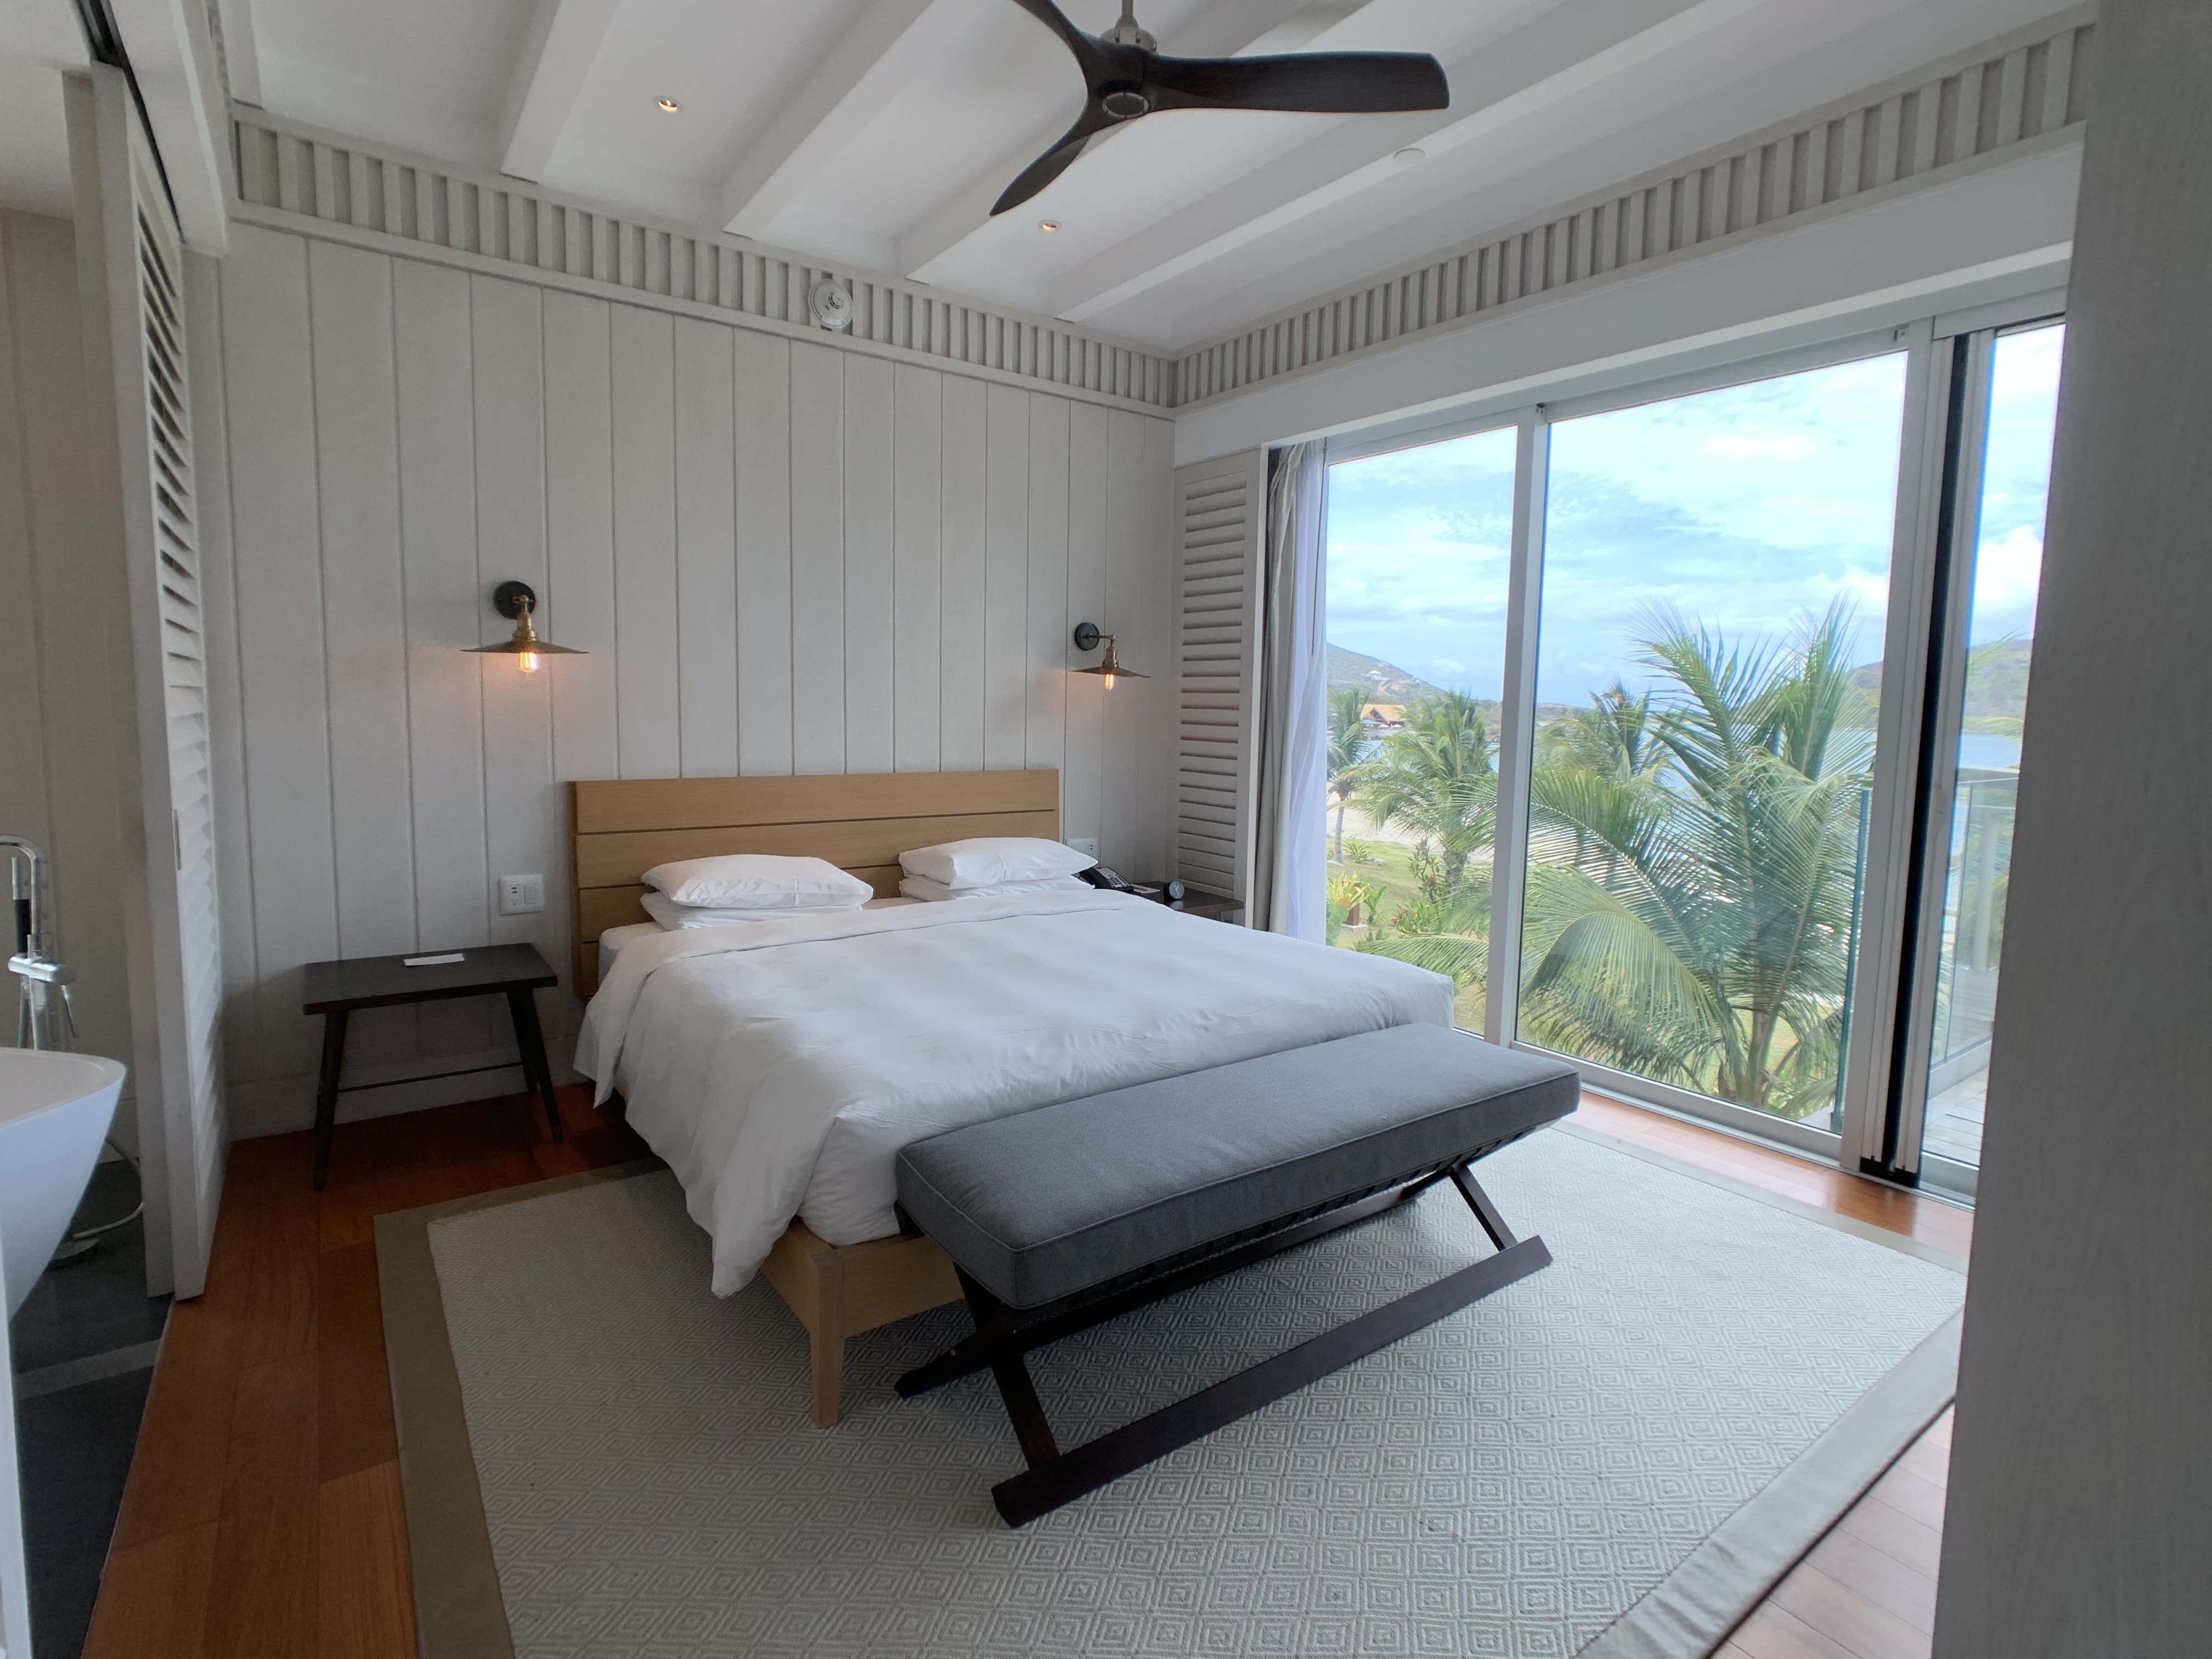 Park Hyatt St Kitts Suite Bed